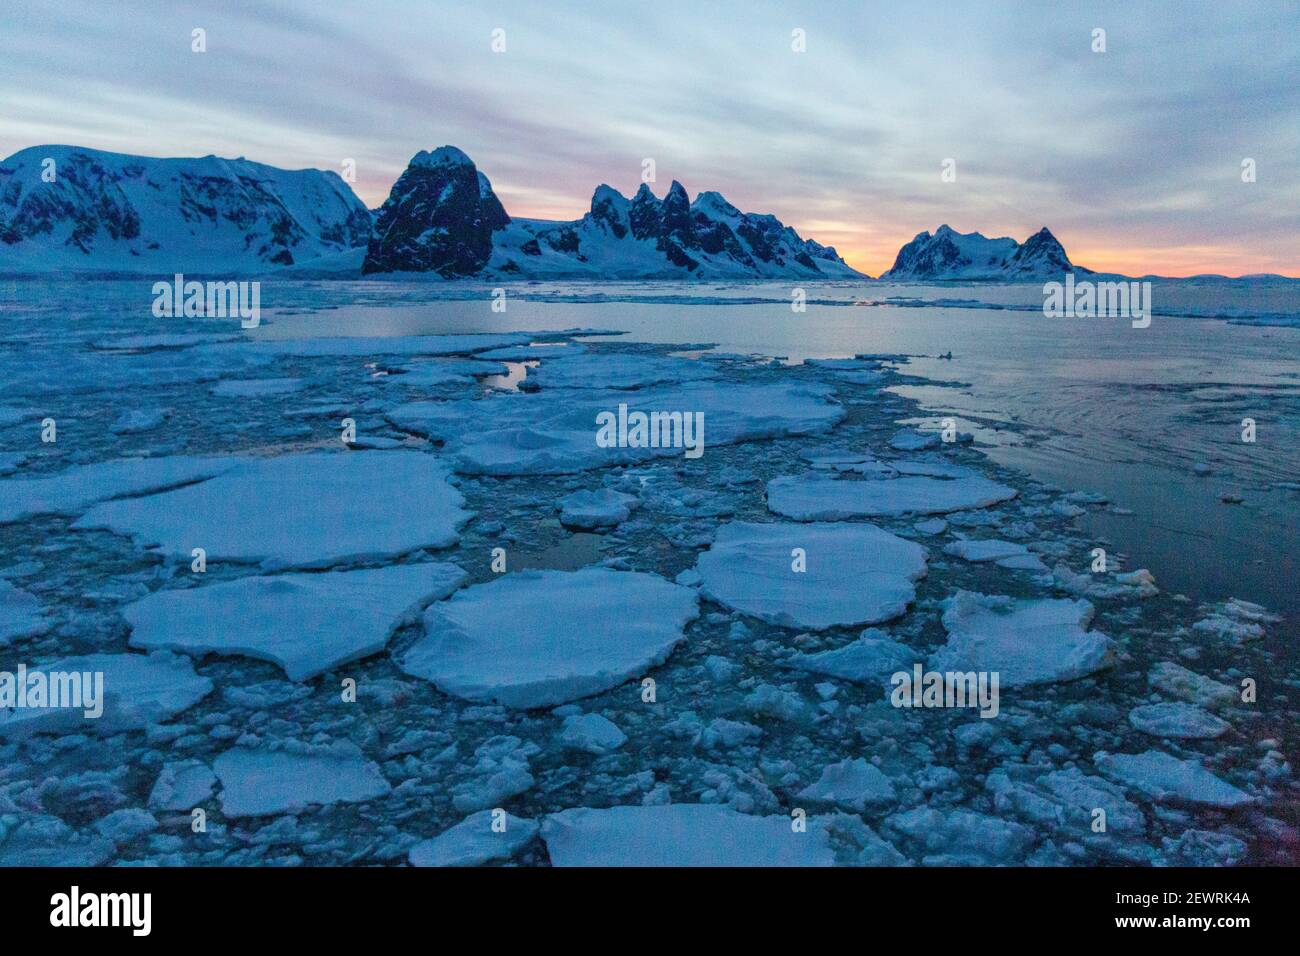 Sonnenaufgang auf schneebedeckten Bergen und dichtem Meereis im Neumayer-Kanal, Palmer-Archipel, Antarktis, Polarregionen Stockfoto